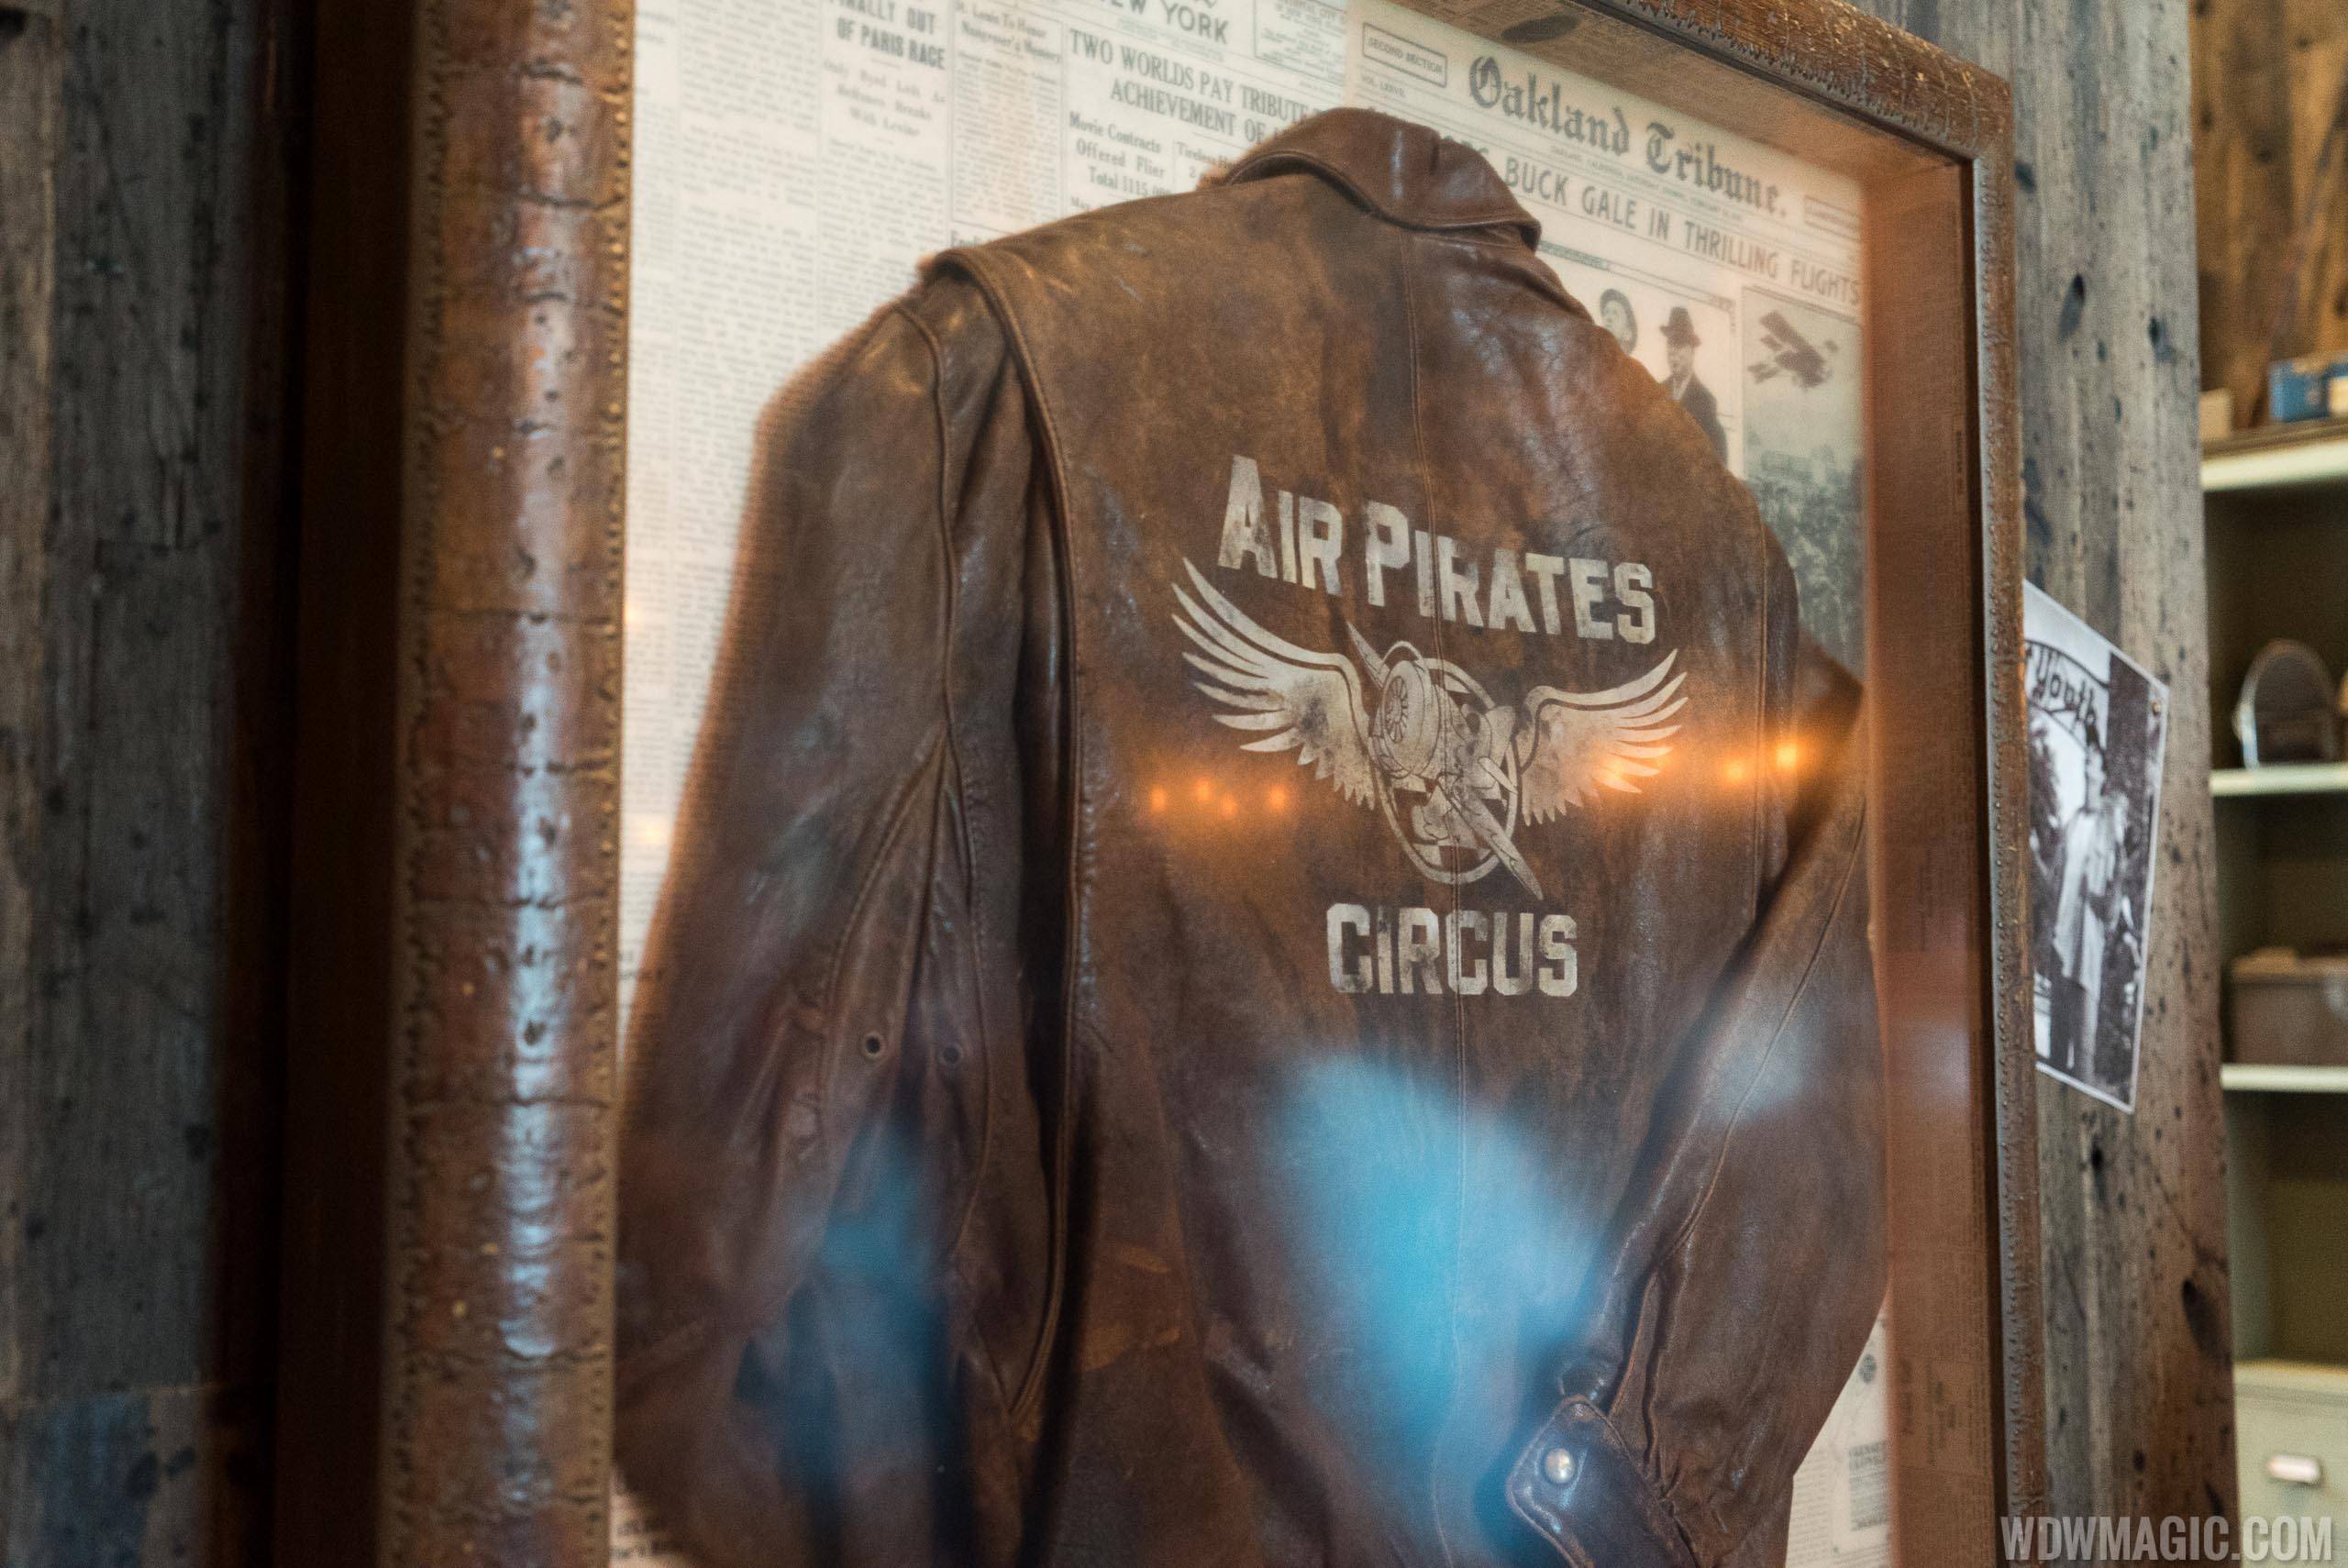 Jock Lindsey's Hangar Bar - Air Pirates Circus jacket